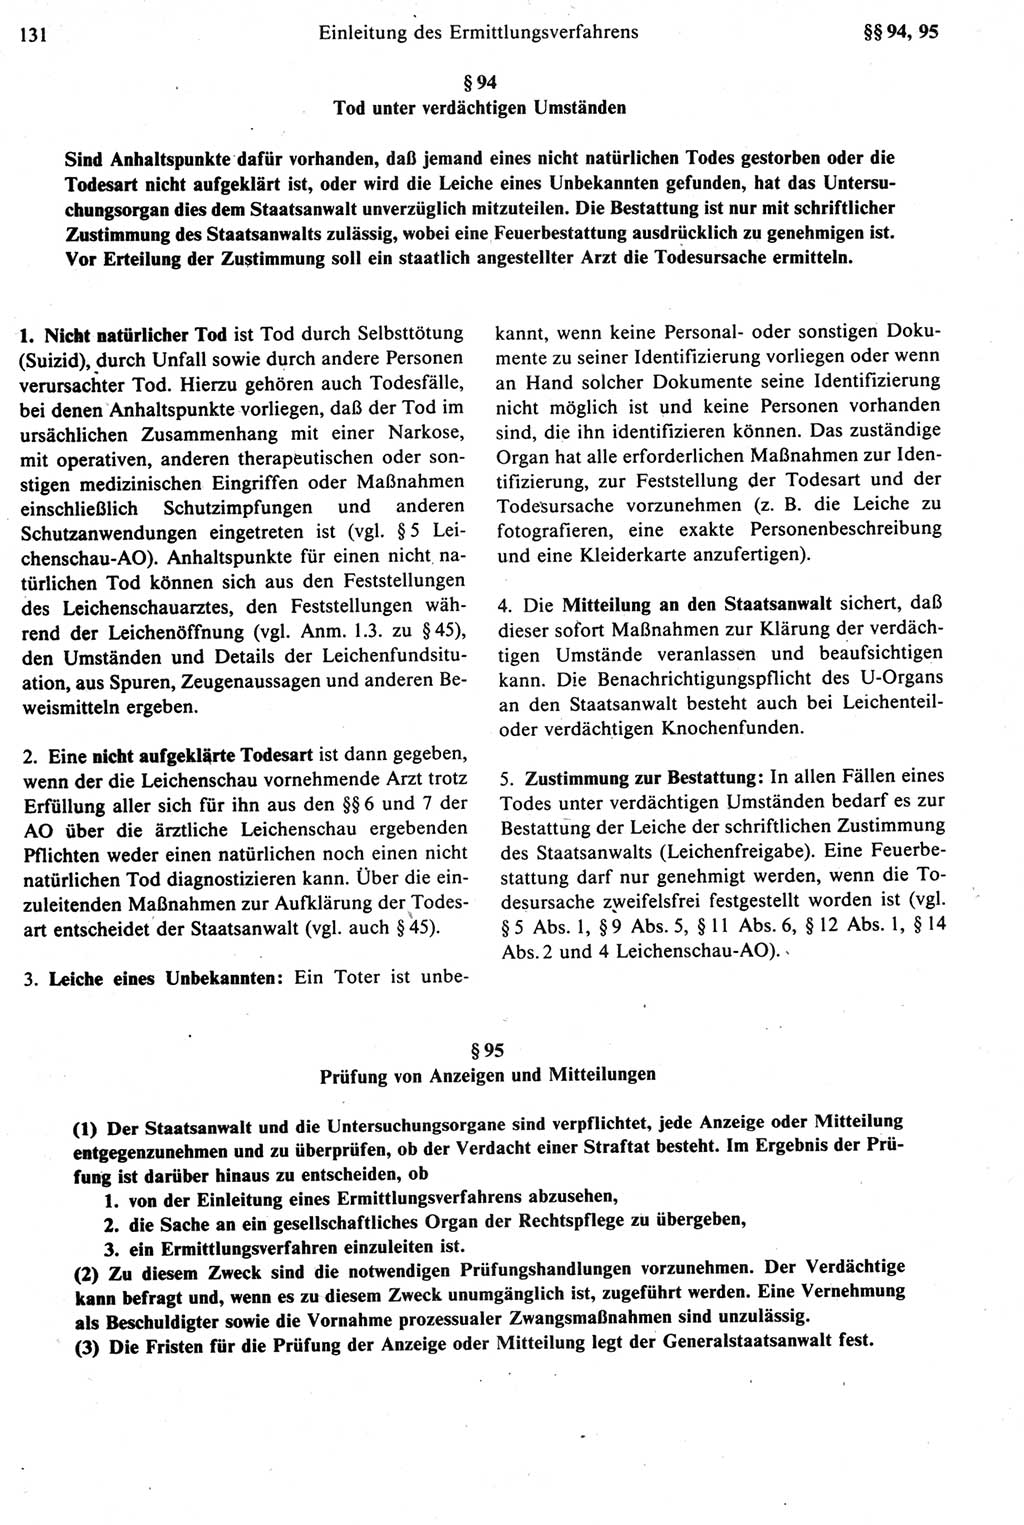 Strafprozeßrecht der DDR [Deutsche Demokratische Republik], Kommentar zur Strafprozeßordnung (StPO) 1987, Seite 131 (Strafprozeßr. DDR Komm. StPO 1987, S. 131)